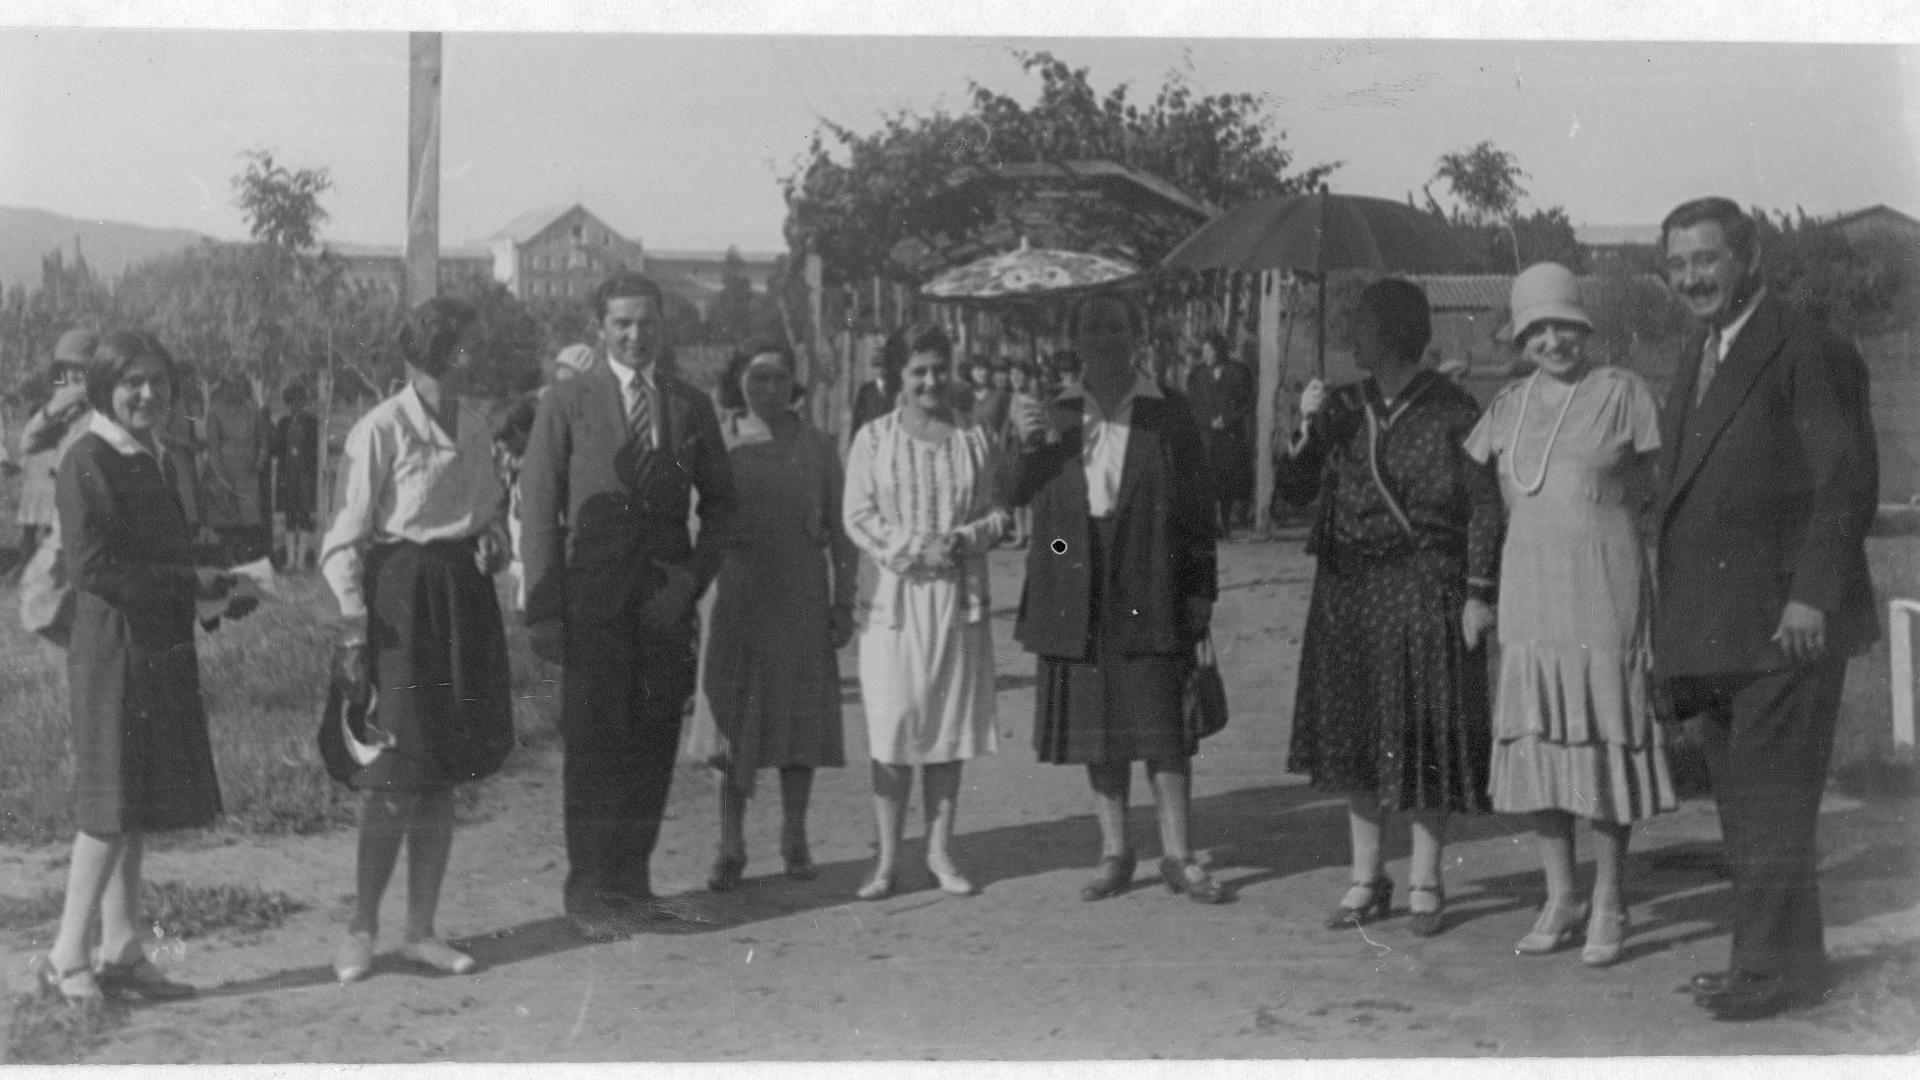 Grupo de hombres y mujeres en un balneareo, una de las mujeres lleva una sombrilla.